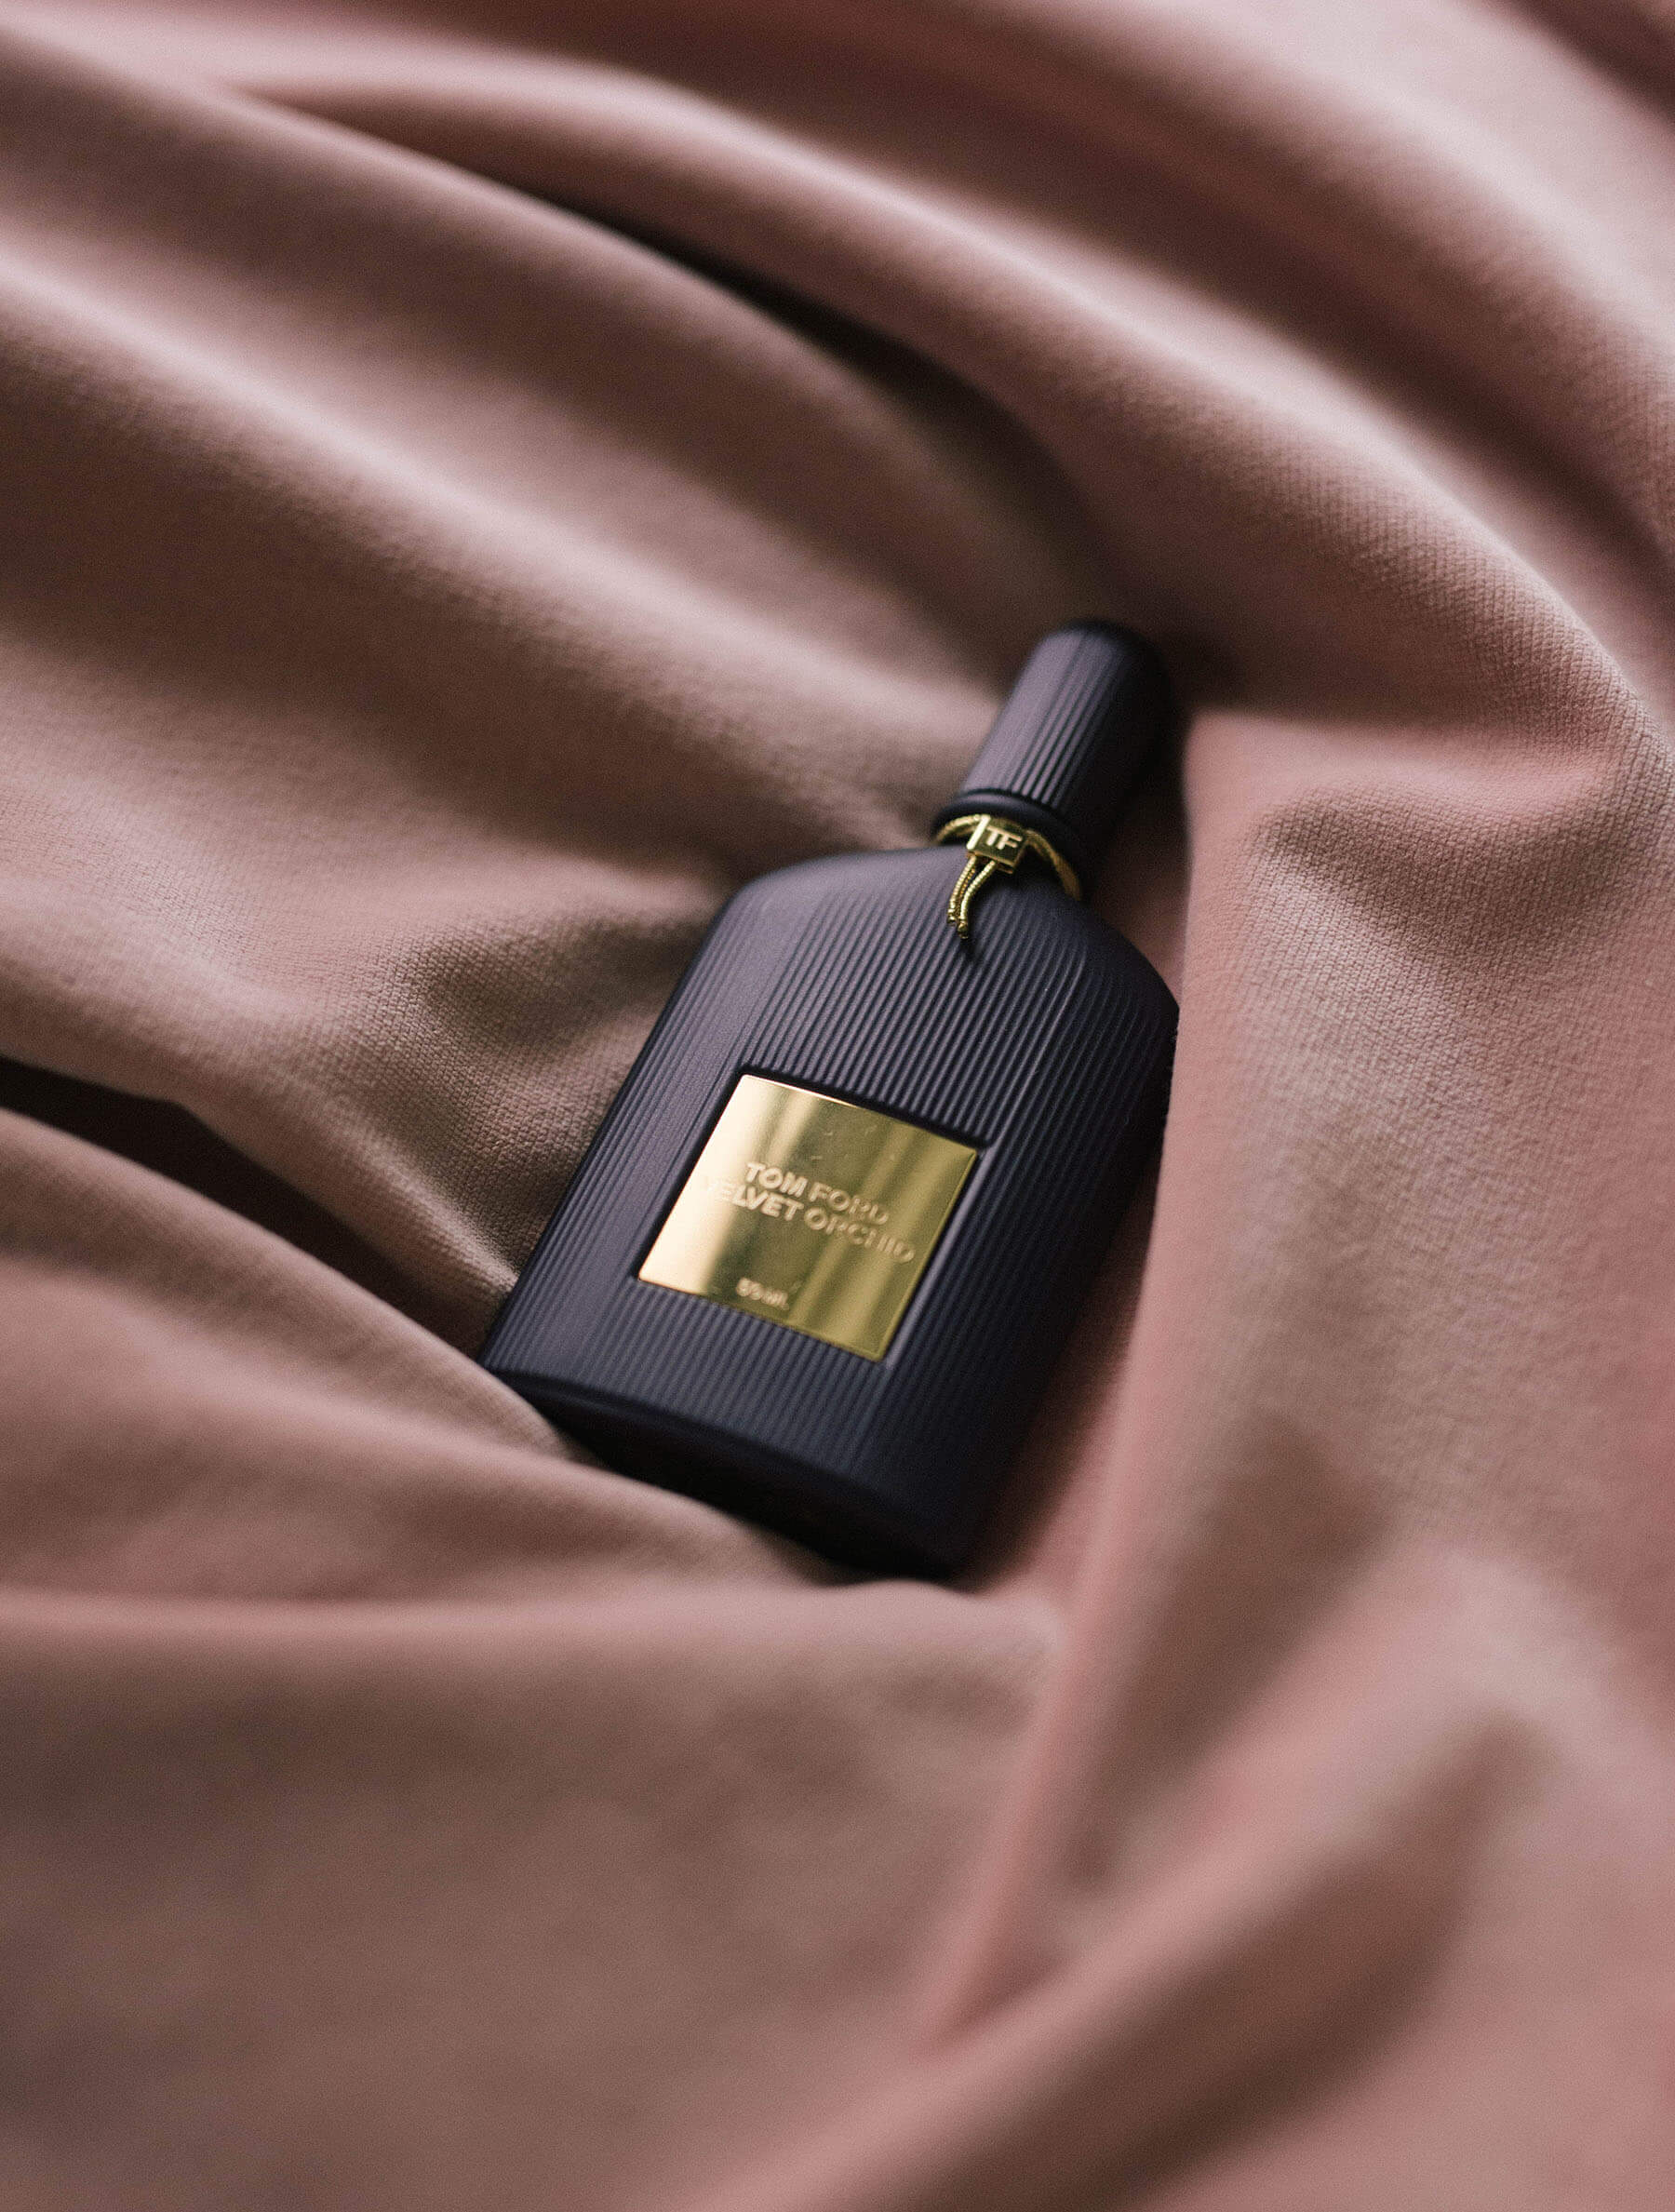 1-top-beauty-2018-fragrances-for-summer-dept43-choice-tom-ford-velvet-orchid